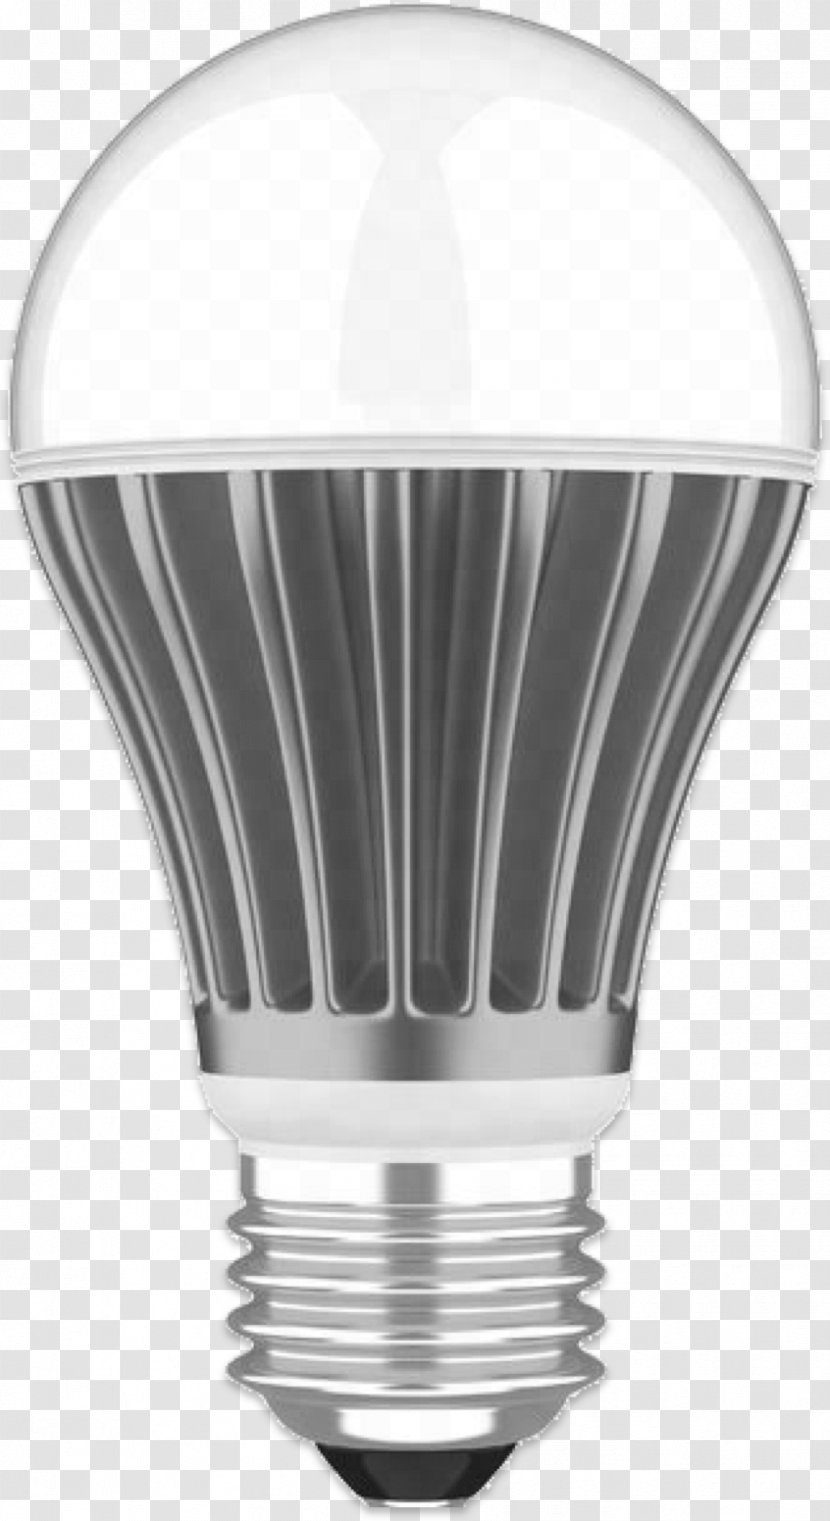 Landscape Lighting Incandescent Light Bulb LED Lamp Transparent PNG